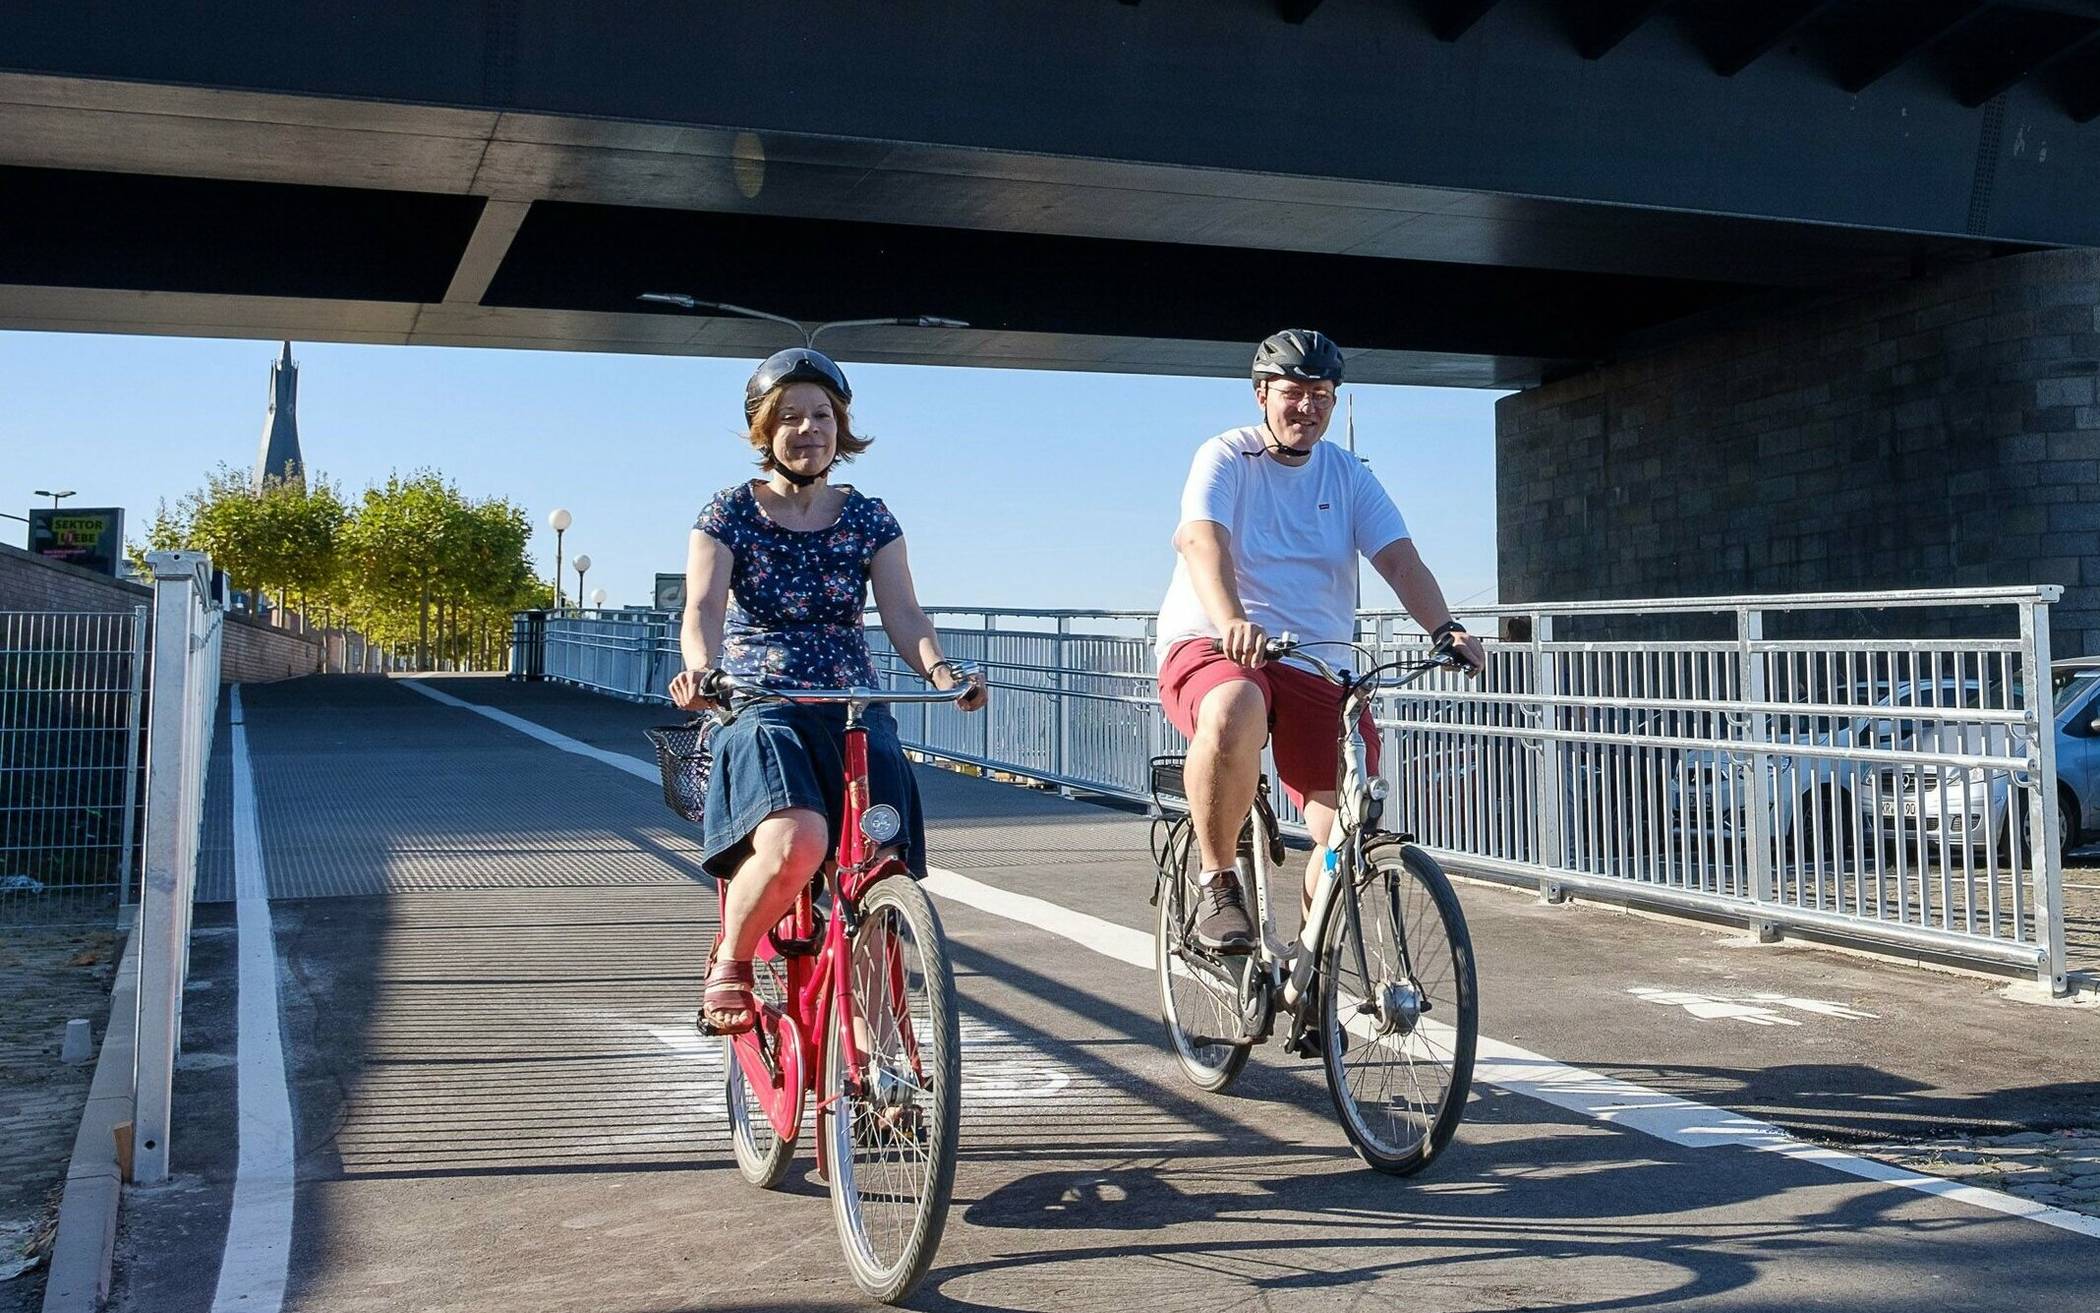 Die neue Rampe am Joseph-Beuys-Ufer für Radfahrer und Fußgänger - Birgit Muéll und Florian Fuchs vom Amt für Verkehrsmanagement nutzten die Gelegenheit.